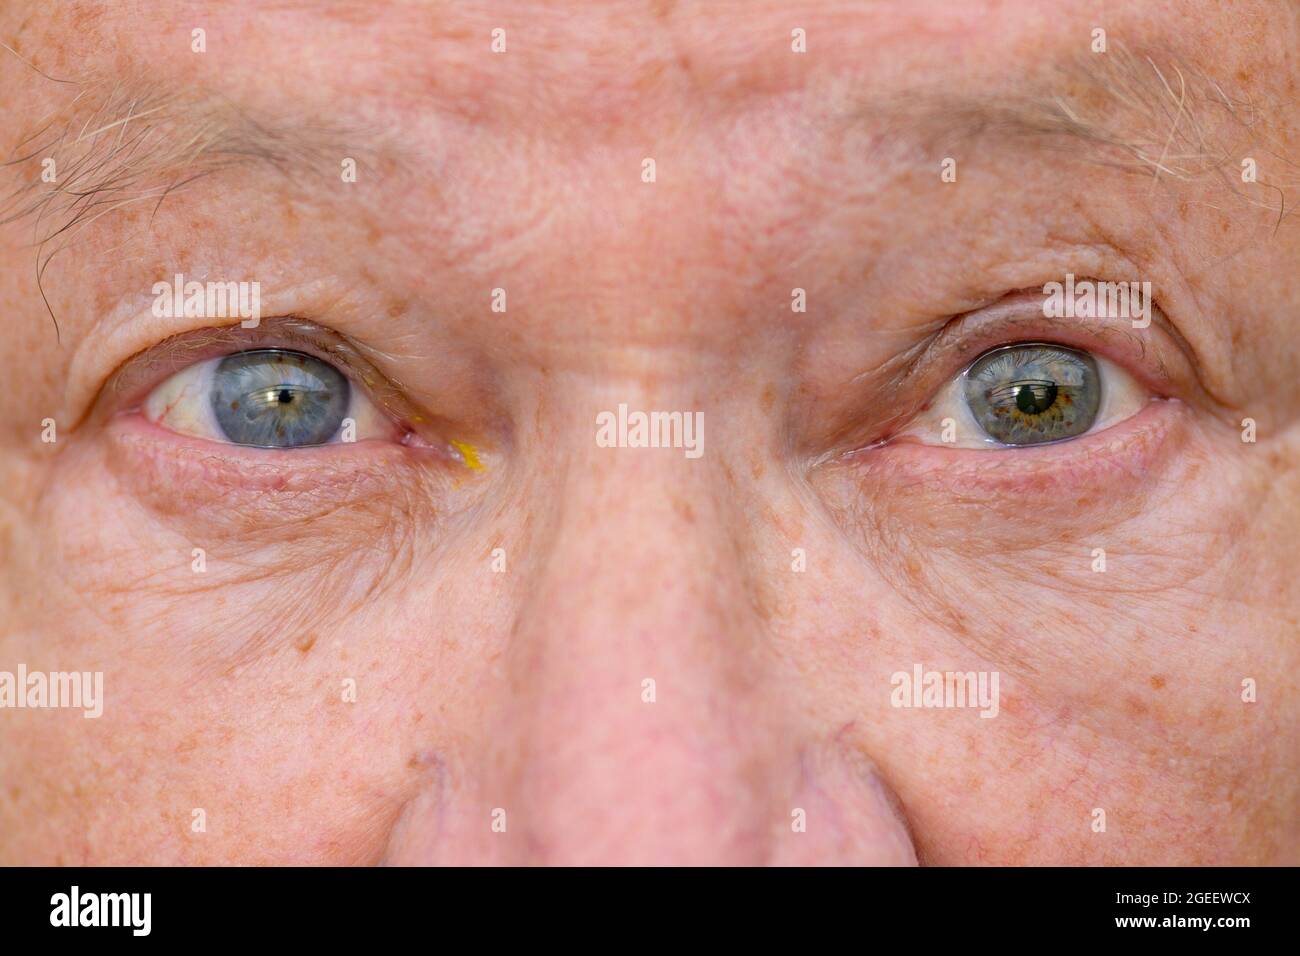 Gros plan extrême des yeux d'un homme âgé avec une maladie oculaire montrant une dilatation inégale de la pupille Banque D'Images